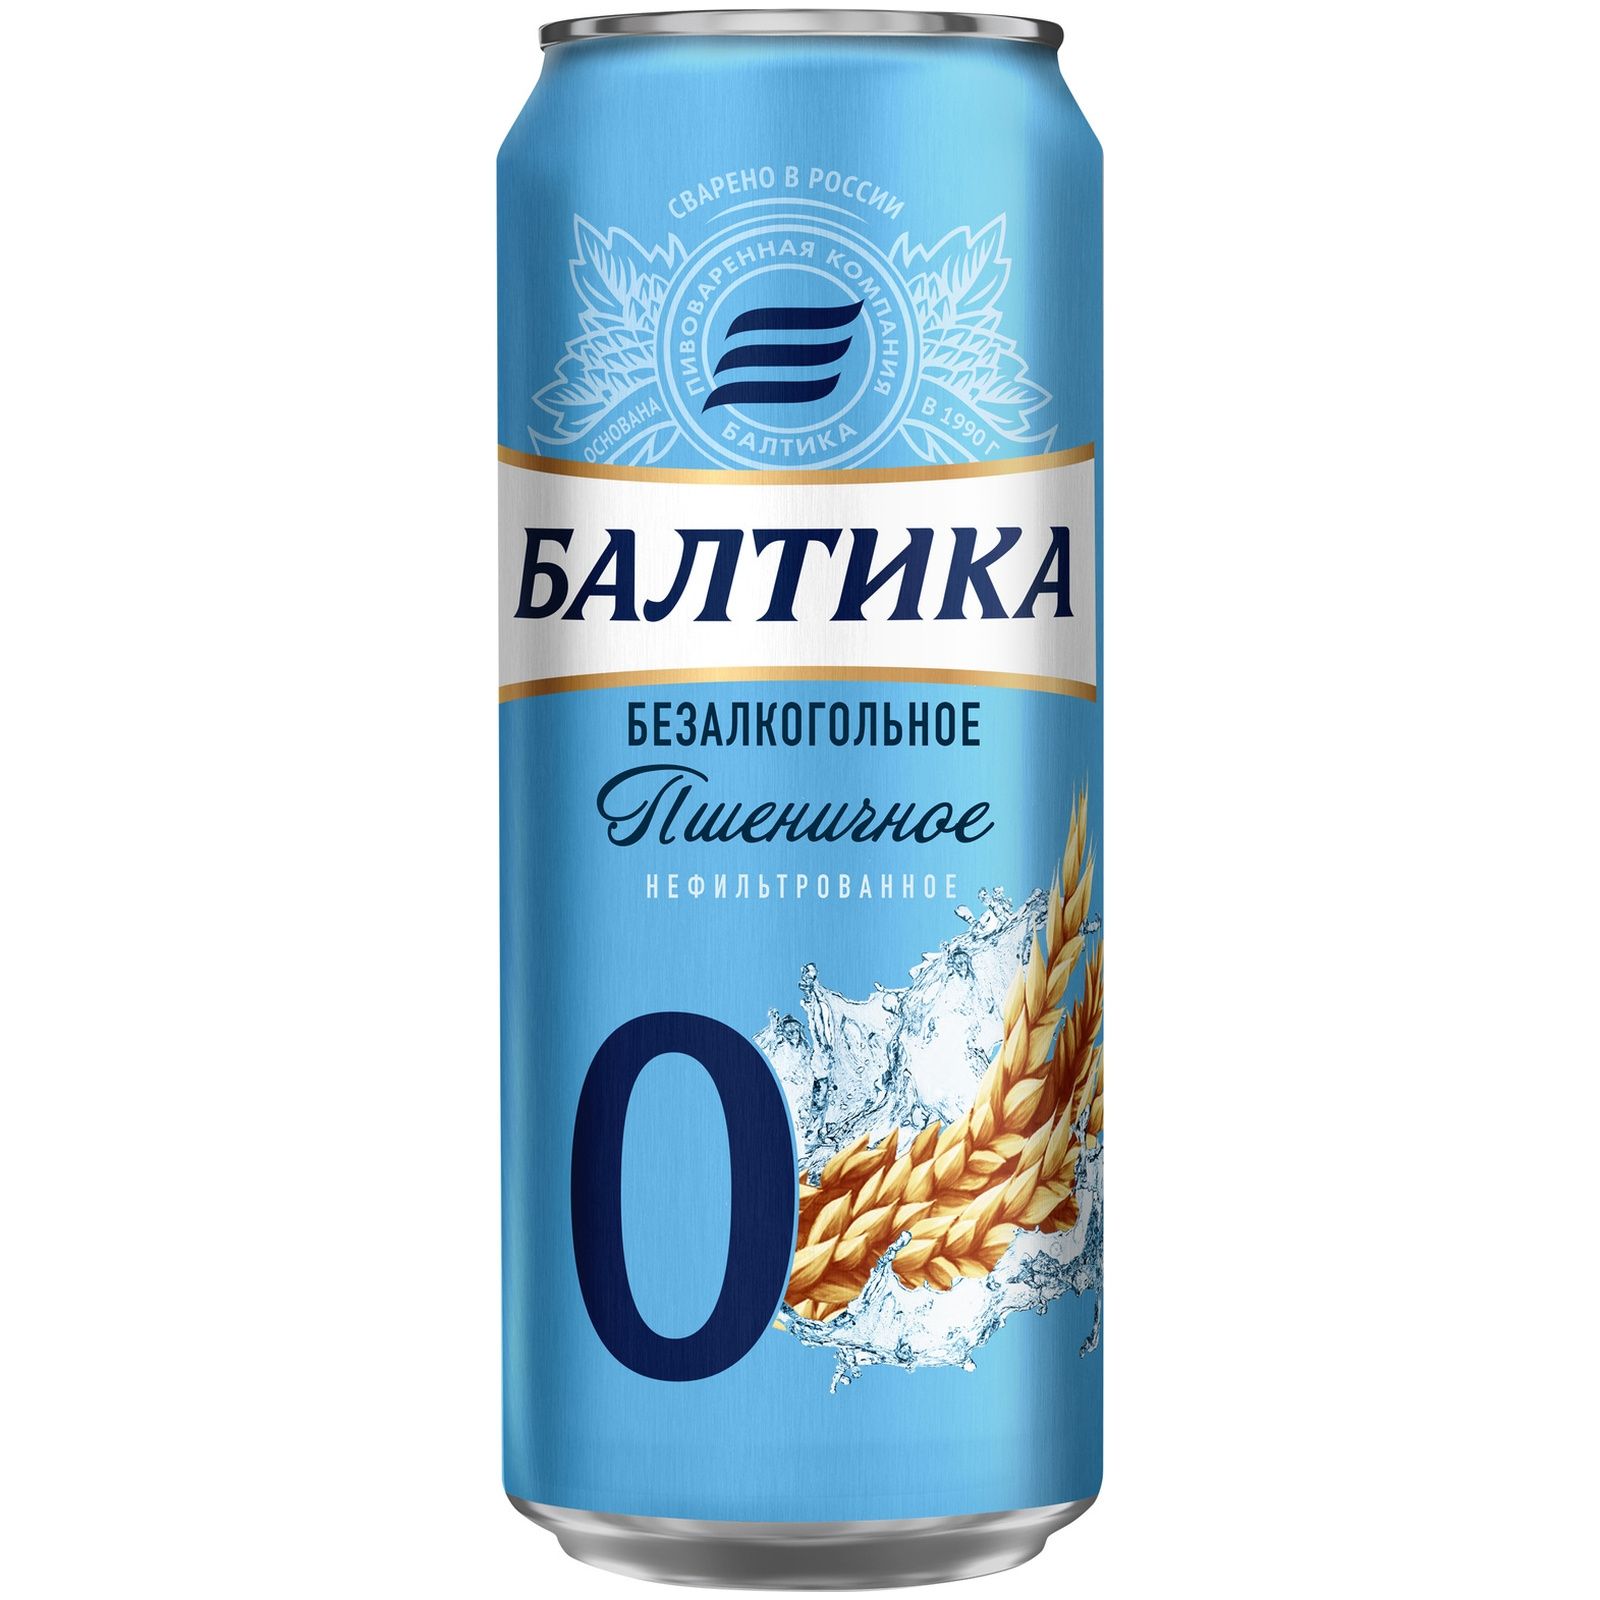 Пиво балтика пшеничное. Пиво безалкогольное Балтика пшеничное. Пиво Балтика 0 безалкогольное пшеничное. Пиво Балтика 0.45 пшеничное жб. Пиво Балтика пшеничное нефильтрованное ж/б 0,45.